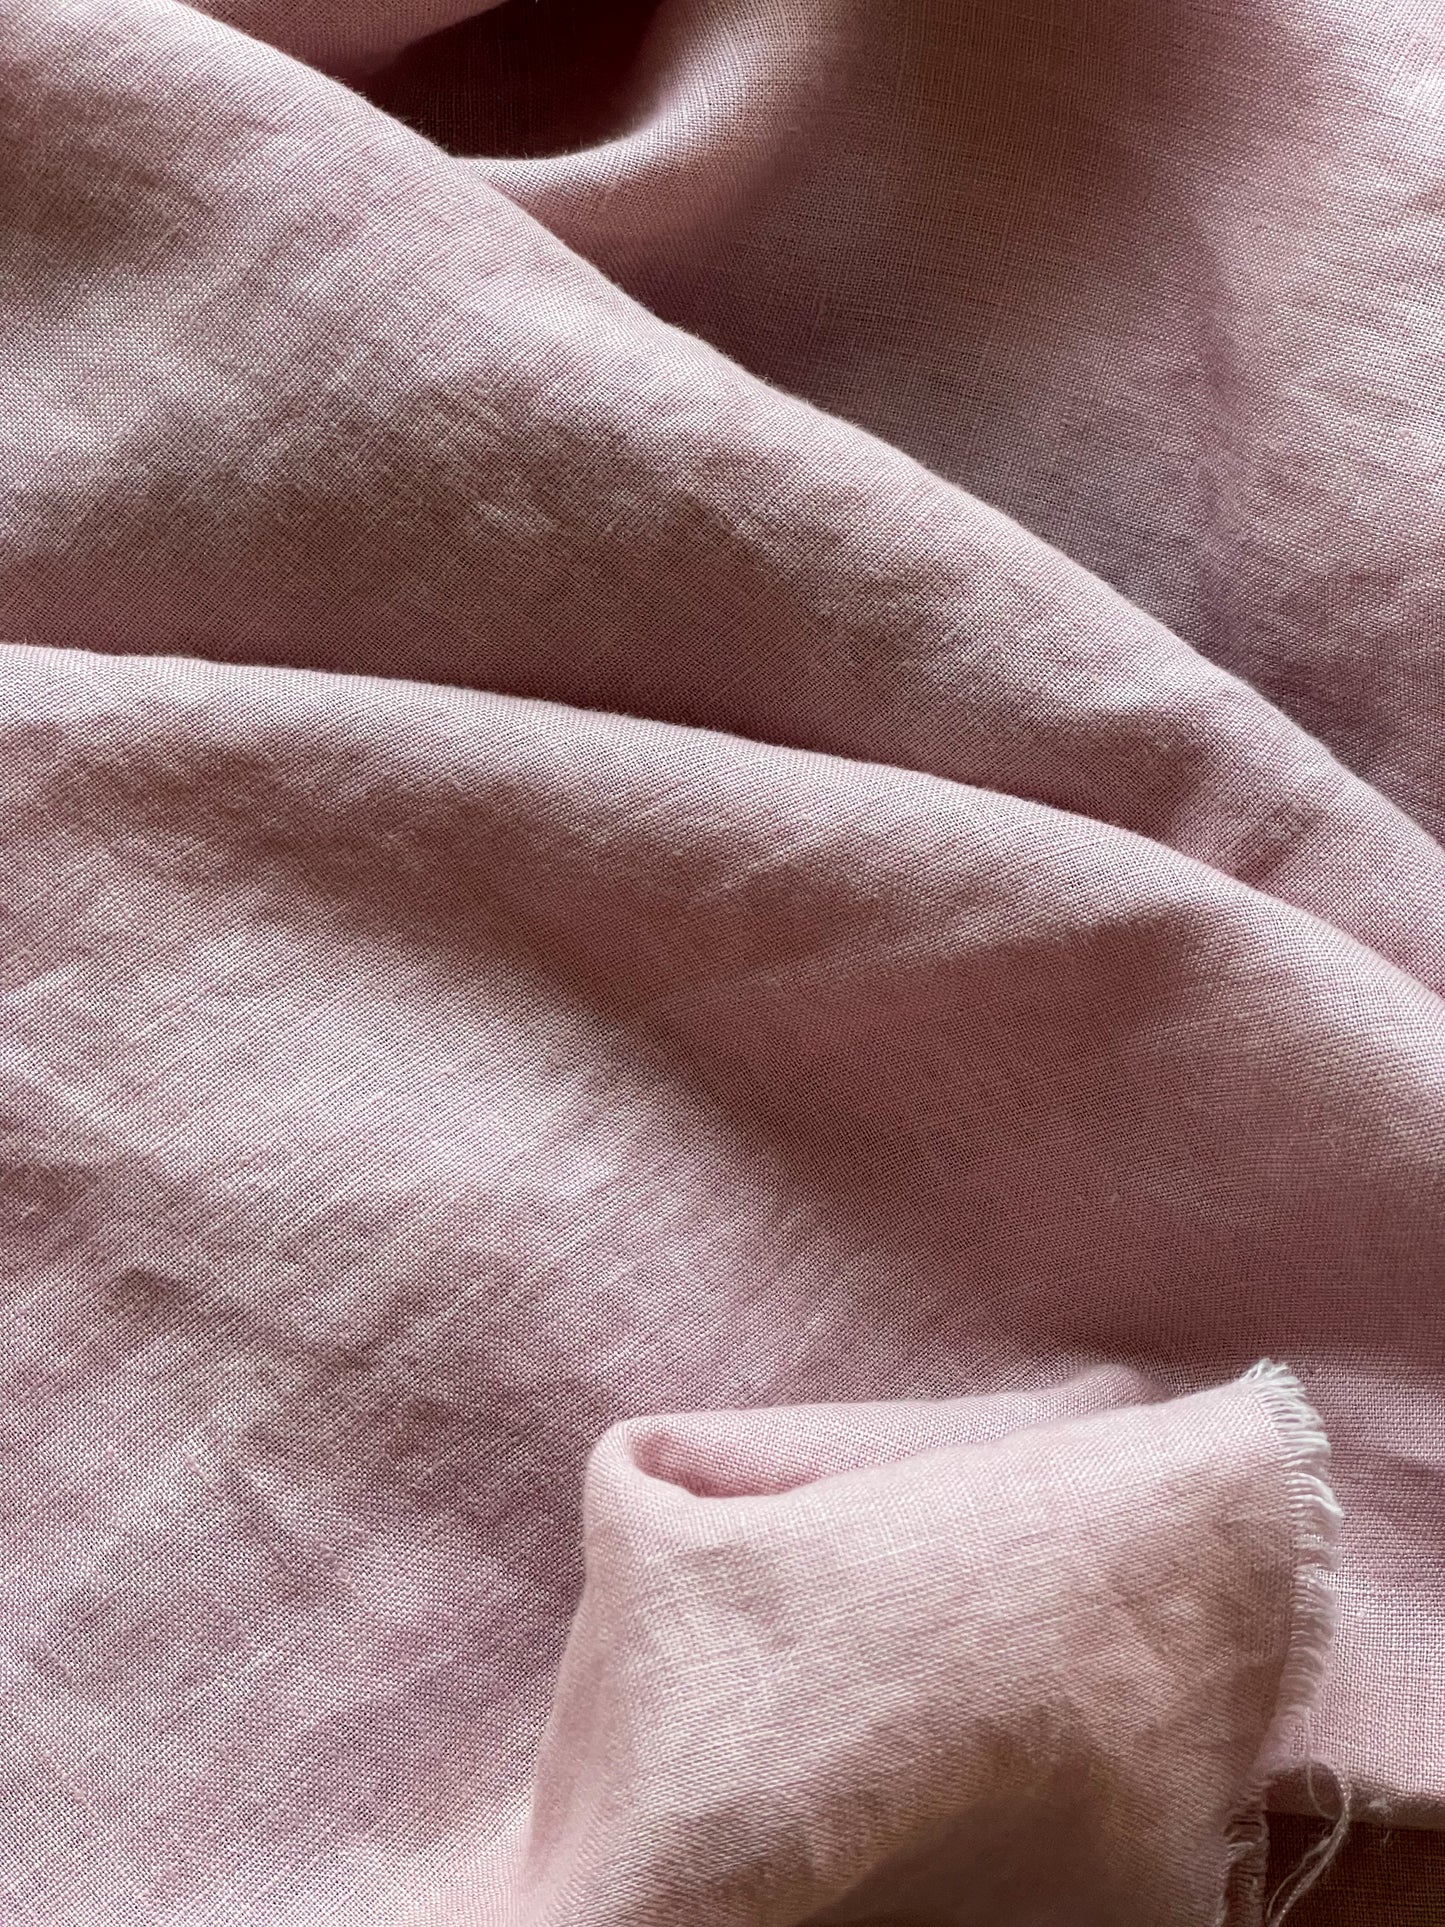 Dusty pink (57) plain colour linen 150gsm